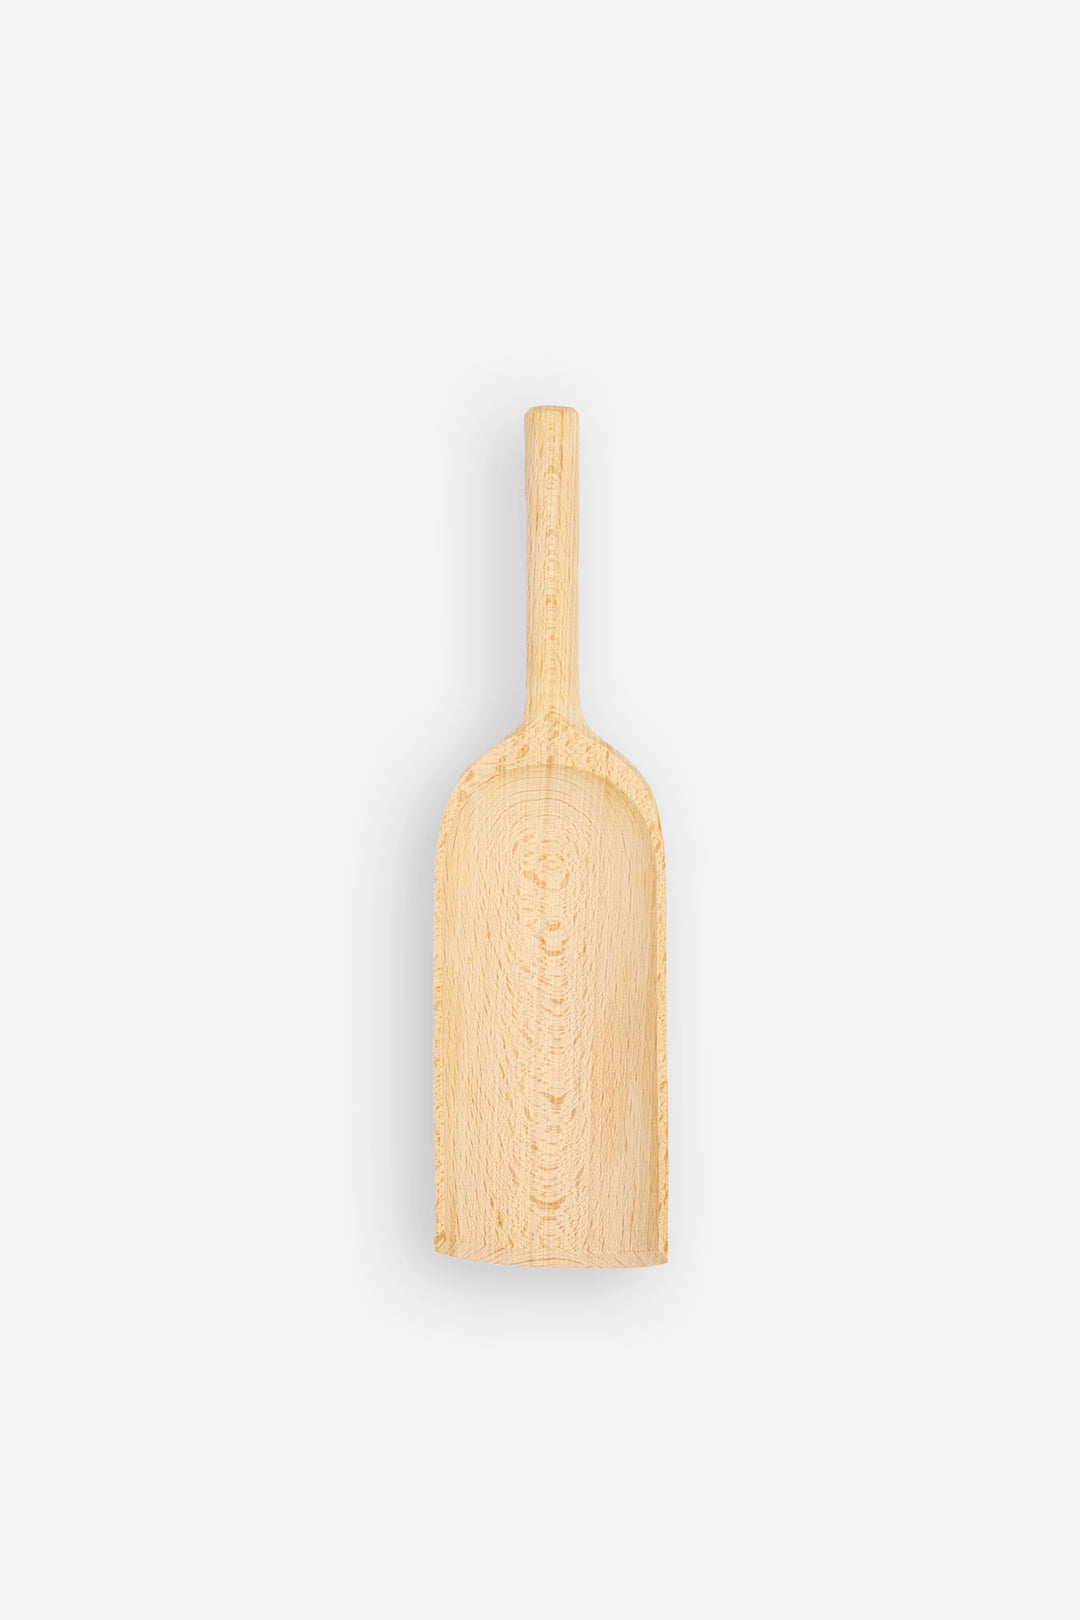 Wooden Scoop / Lrg